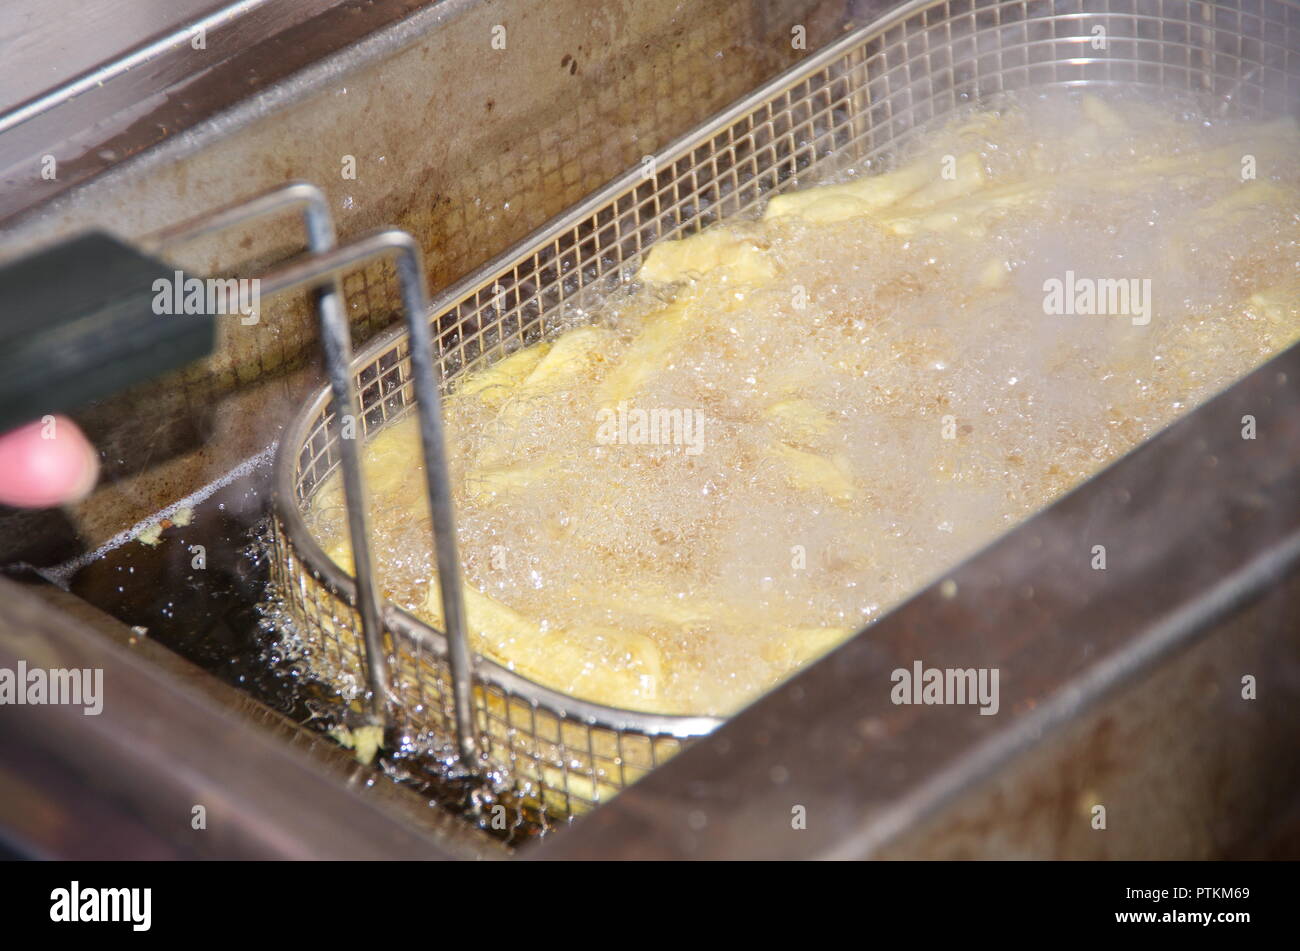 Frittieren von French Fries und Pommes Frites in einer sprudelnden und schmutzigen Fritteuse mit Metallkorb und viel Frittierfett bzw. Öl Stock Photo